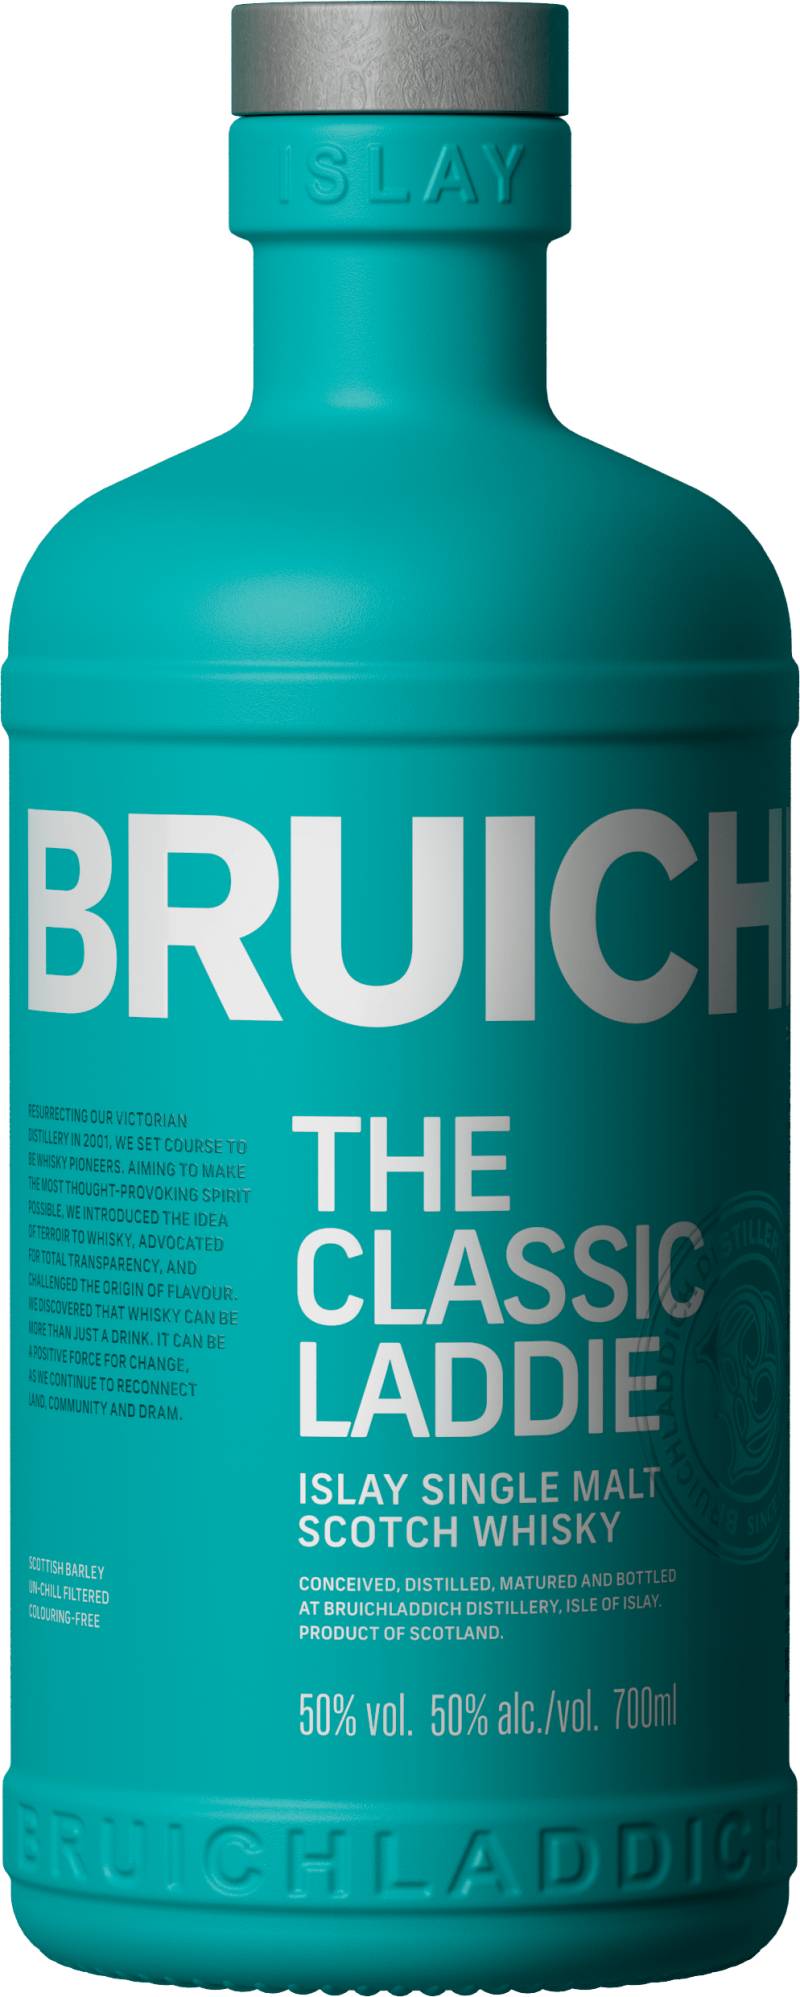 Bruichladdich »The Classic Laddie« Islay Single Malt Scotch Whisky